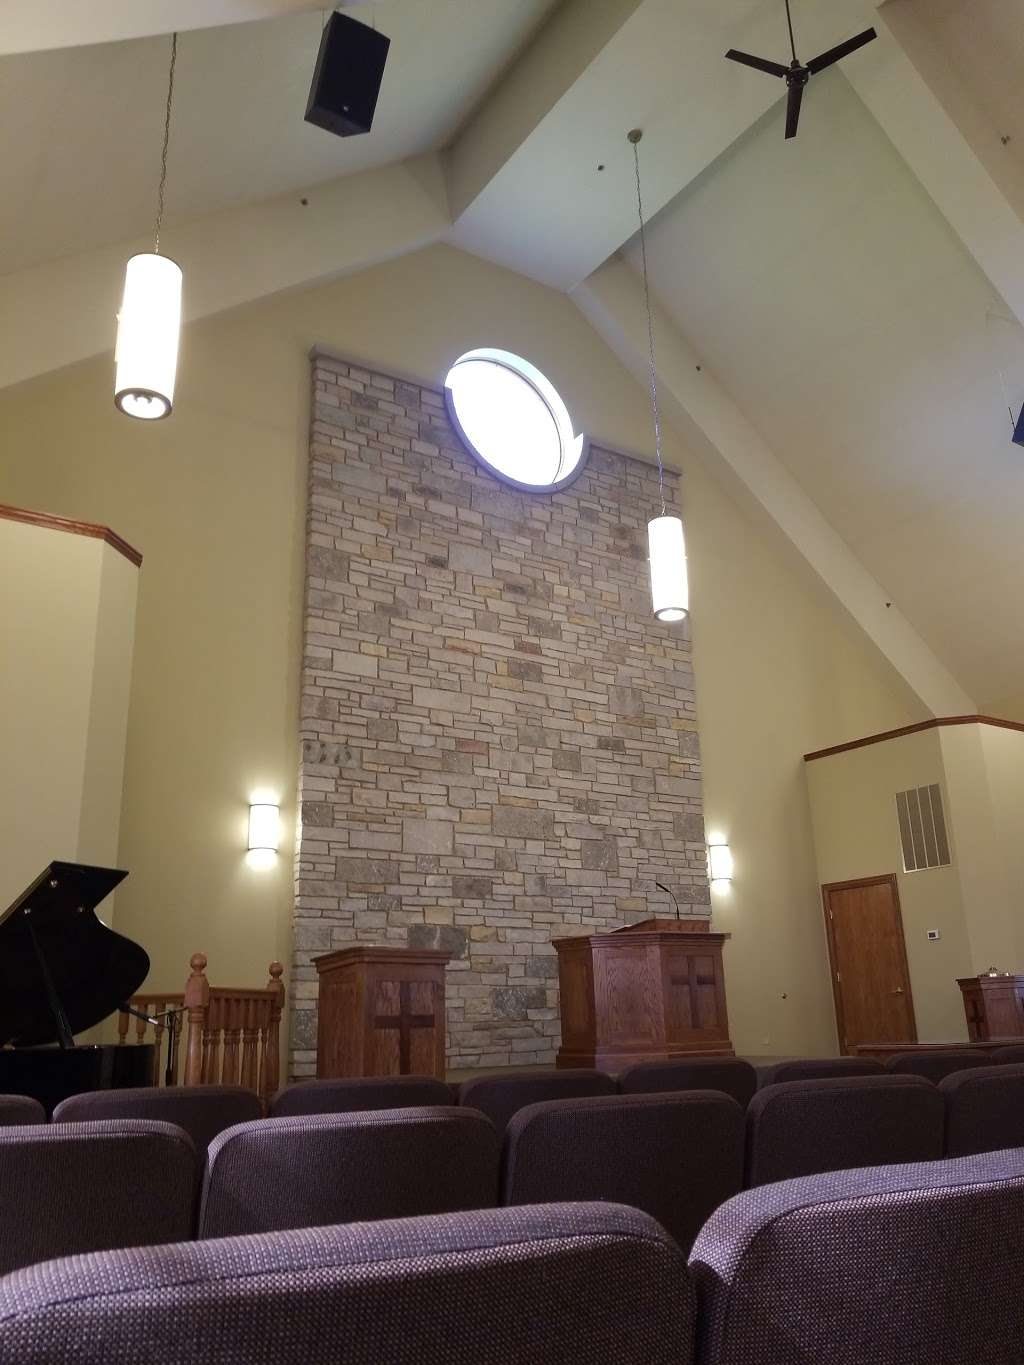 New Covenant Community Church | 1995 Mills Rd, Joliet, IL 60433 | Phone: (815) 603-8533